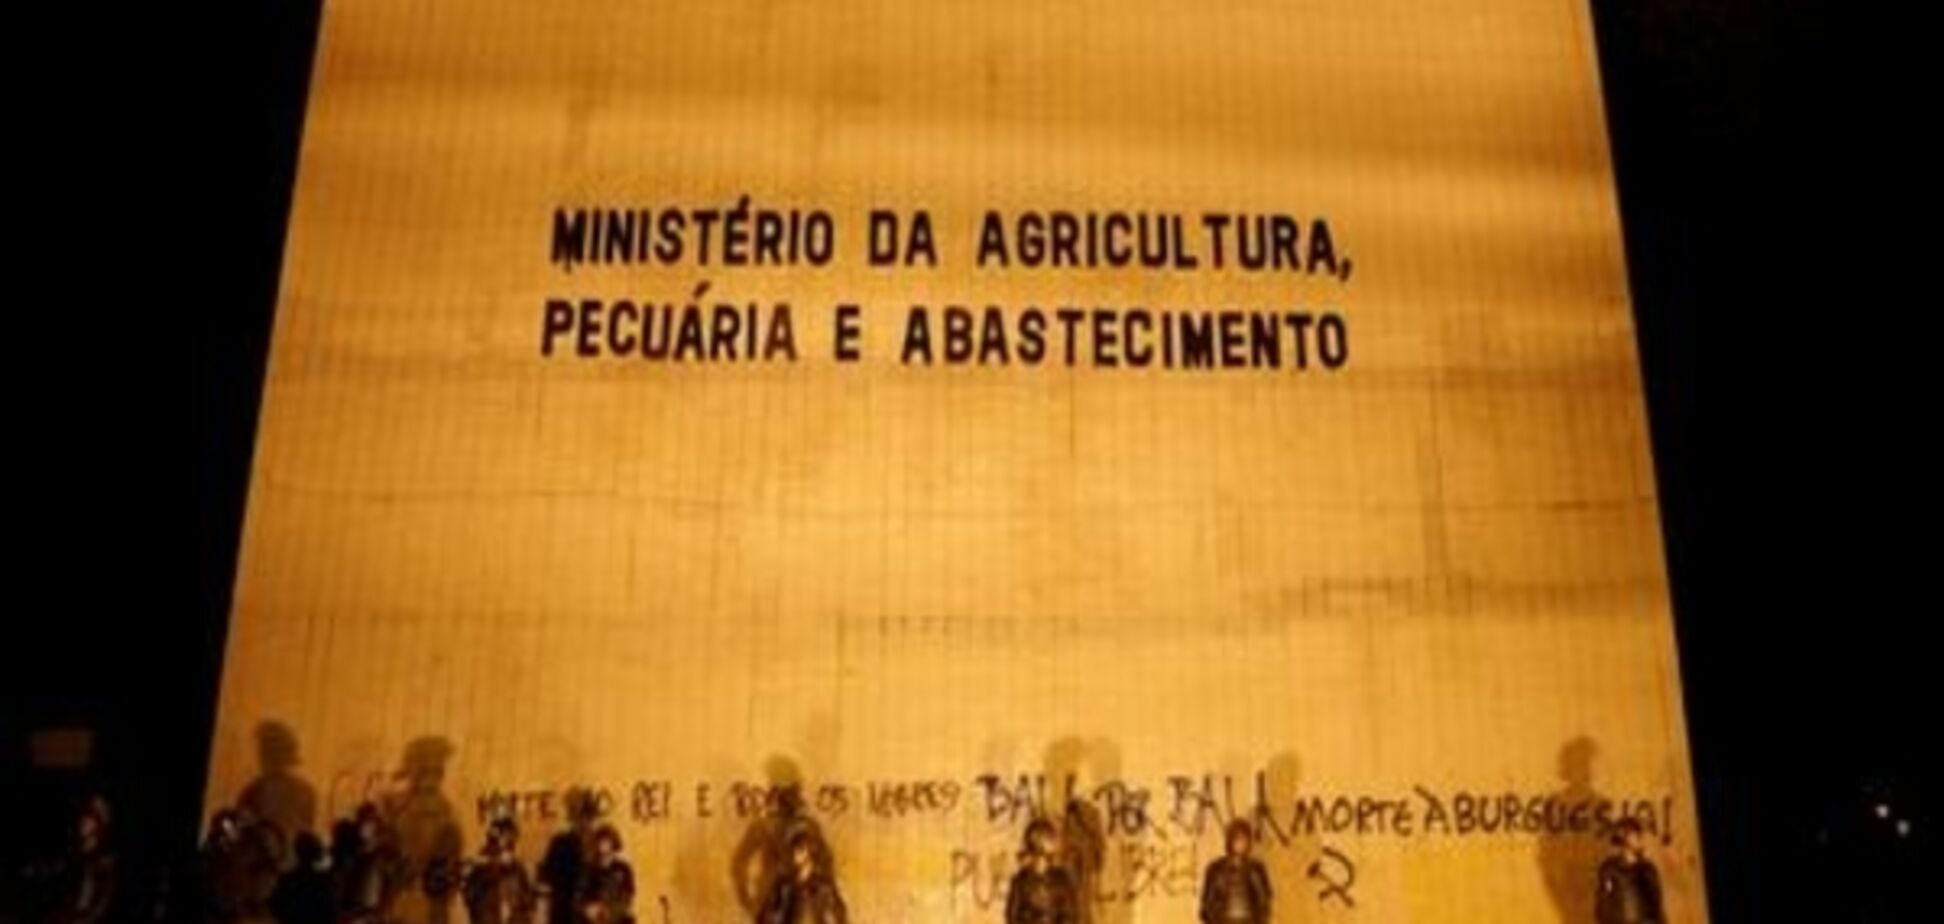 Президент Бразилії залучив війська для розгону демонстрацій